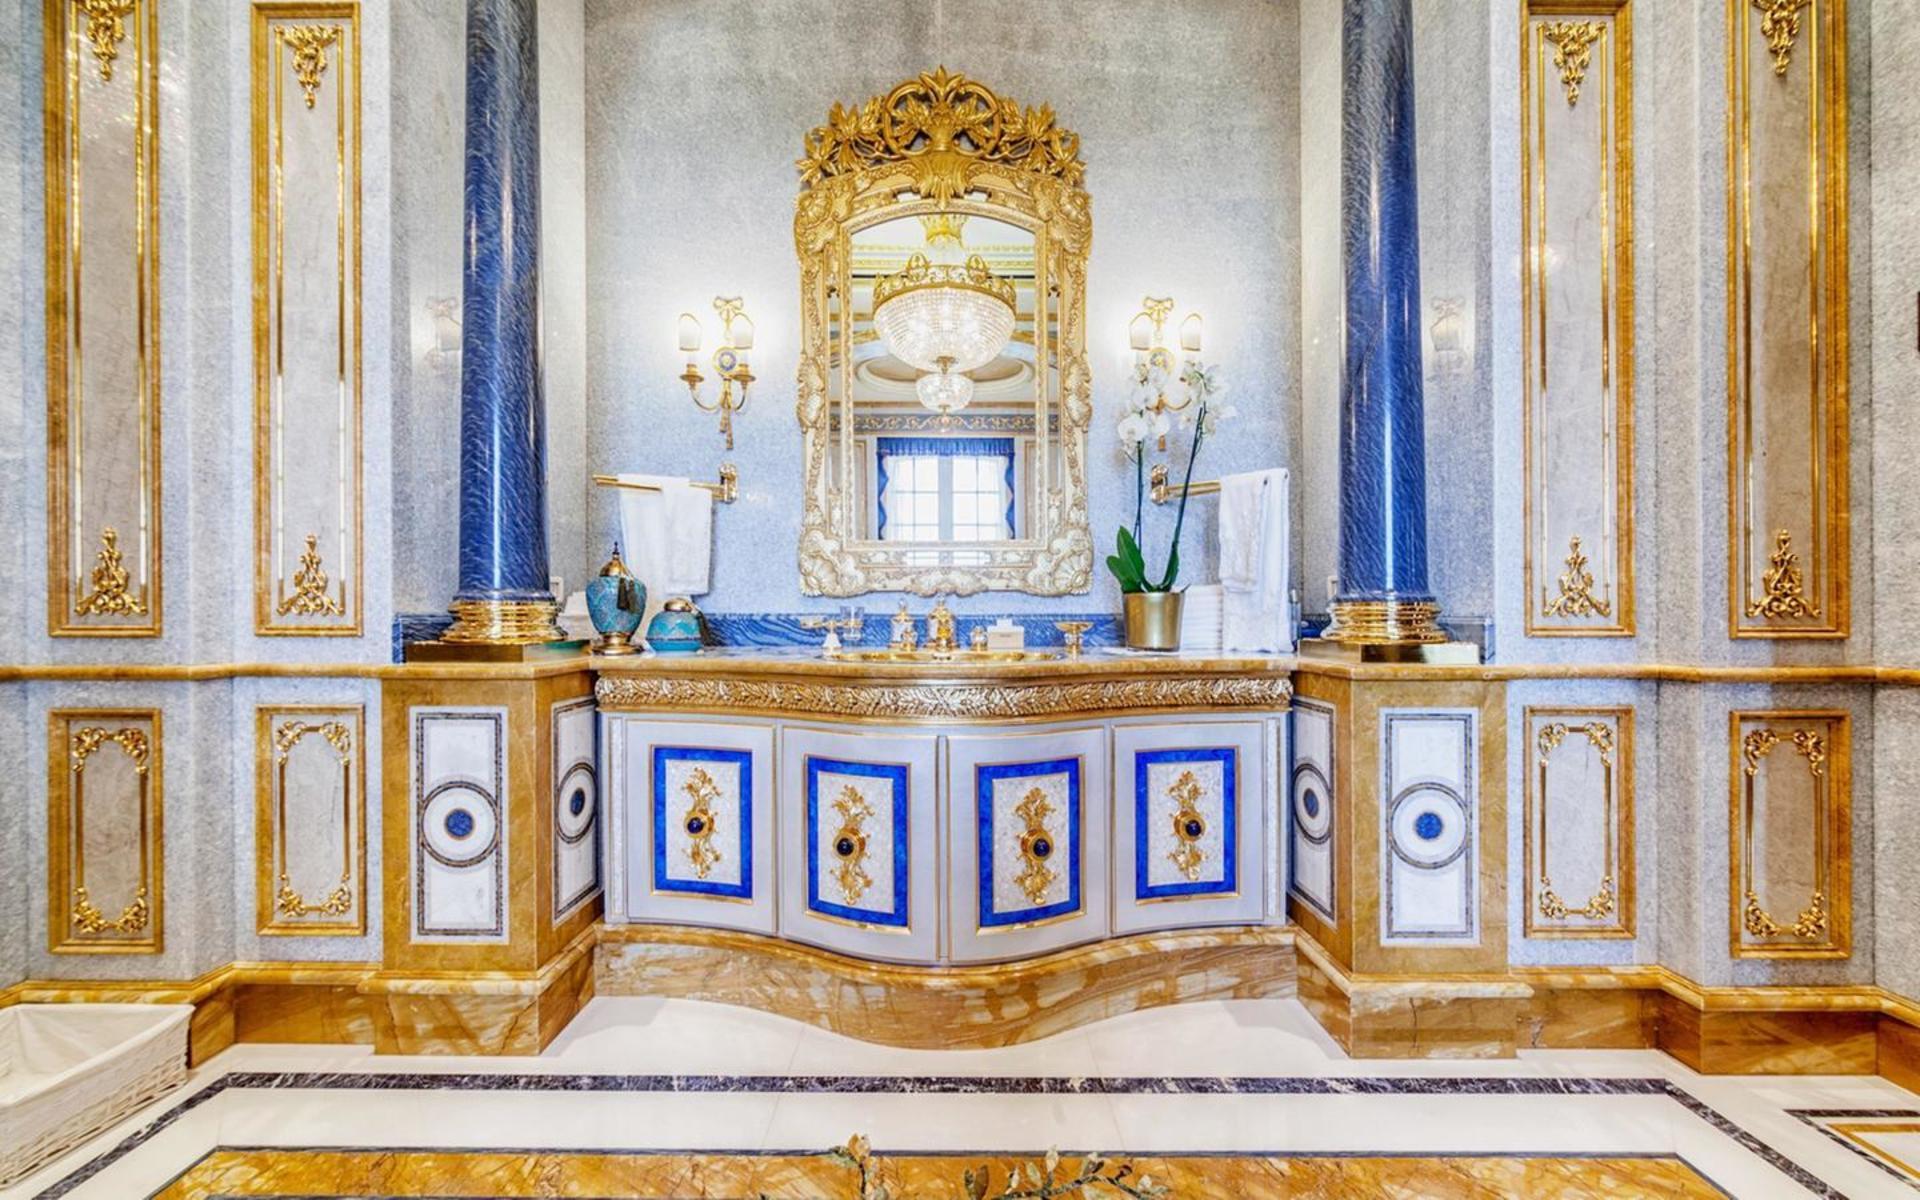 Förutom guld verkar blått vara en favorit i inredningen. Färgen dyker upp överallt, så även i detta badrum.